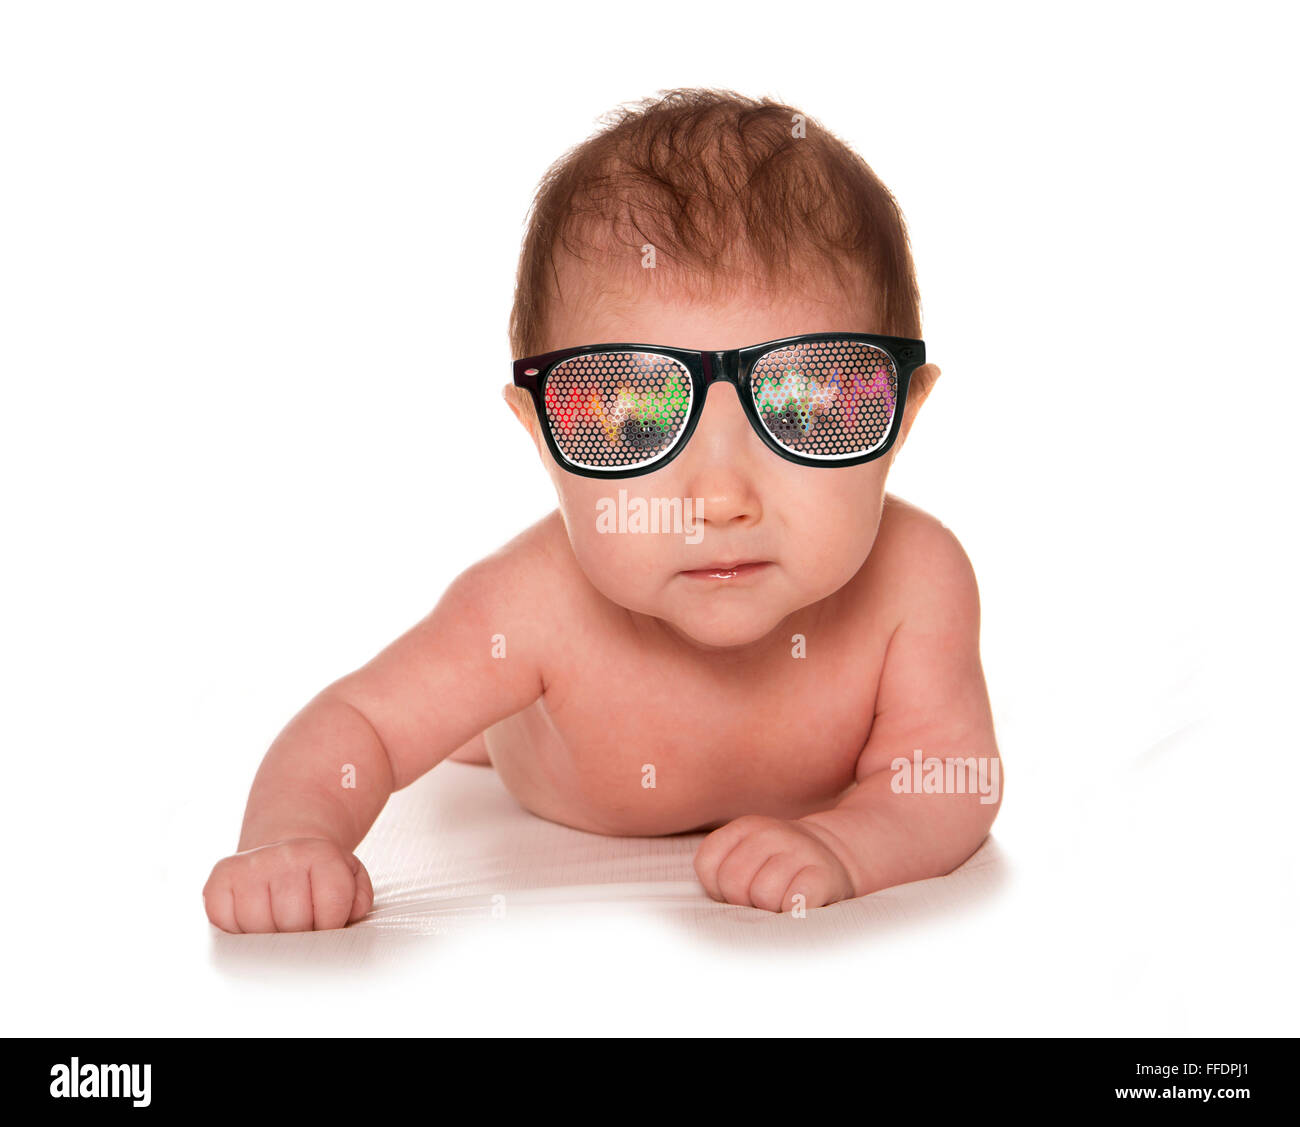 Bébé de trois mois portant des lunettes Silhouette chapeau rave Banque D'Images